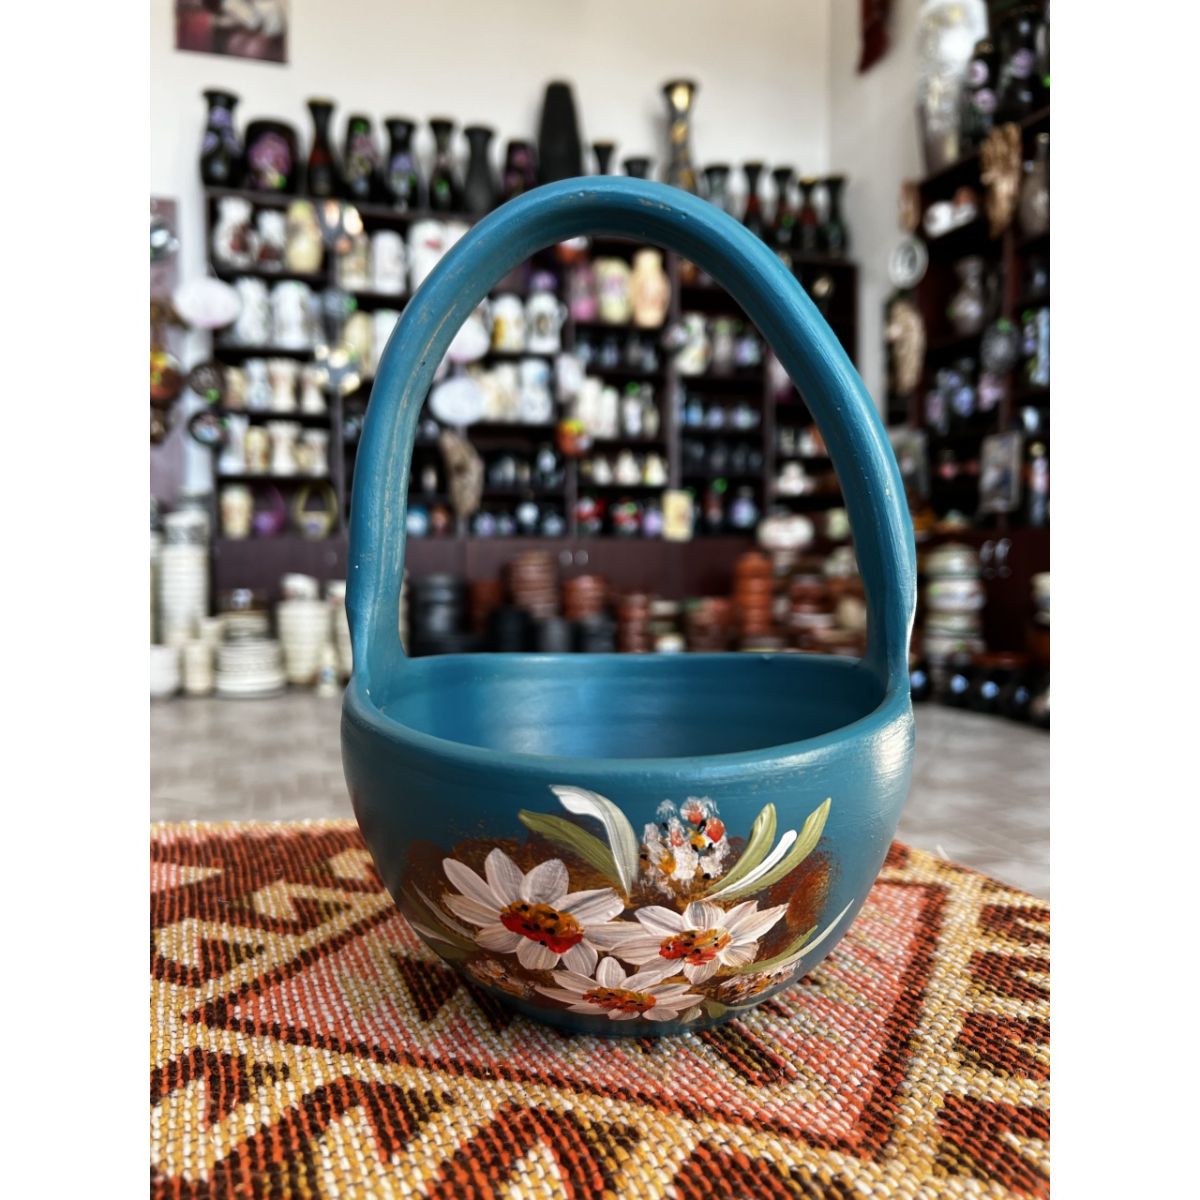 Decoratiuni de interior - Coș din ceramica albastru, hectarul.ro